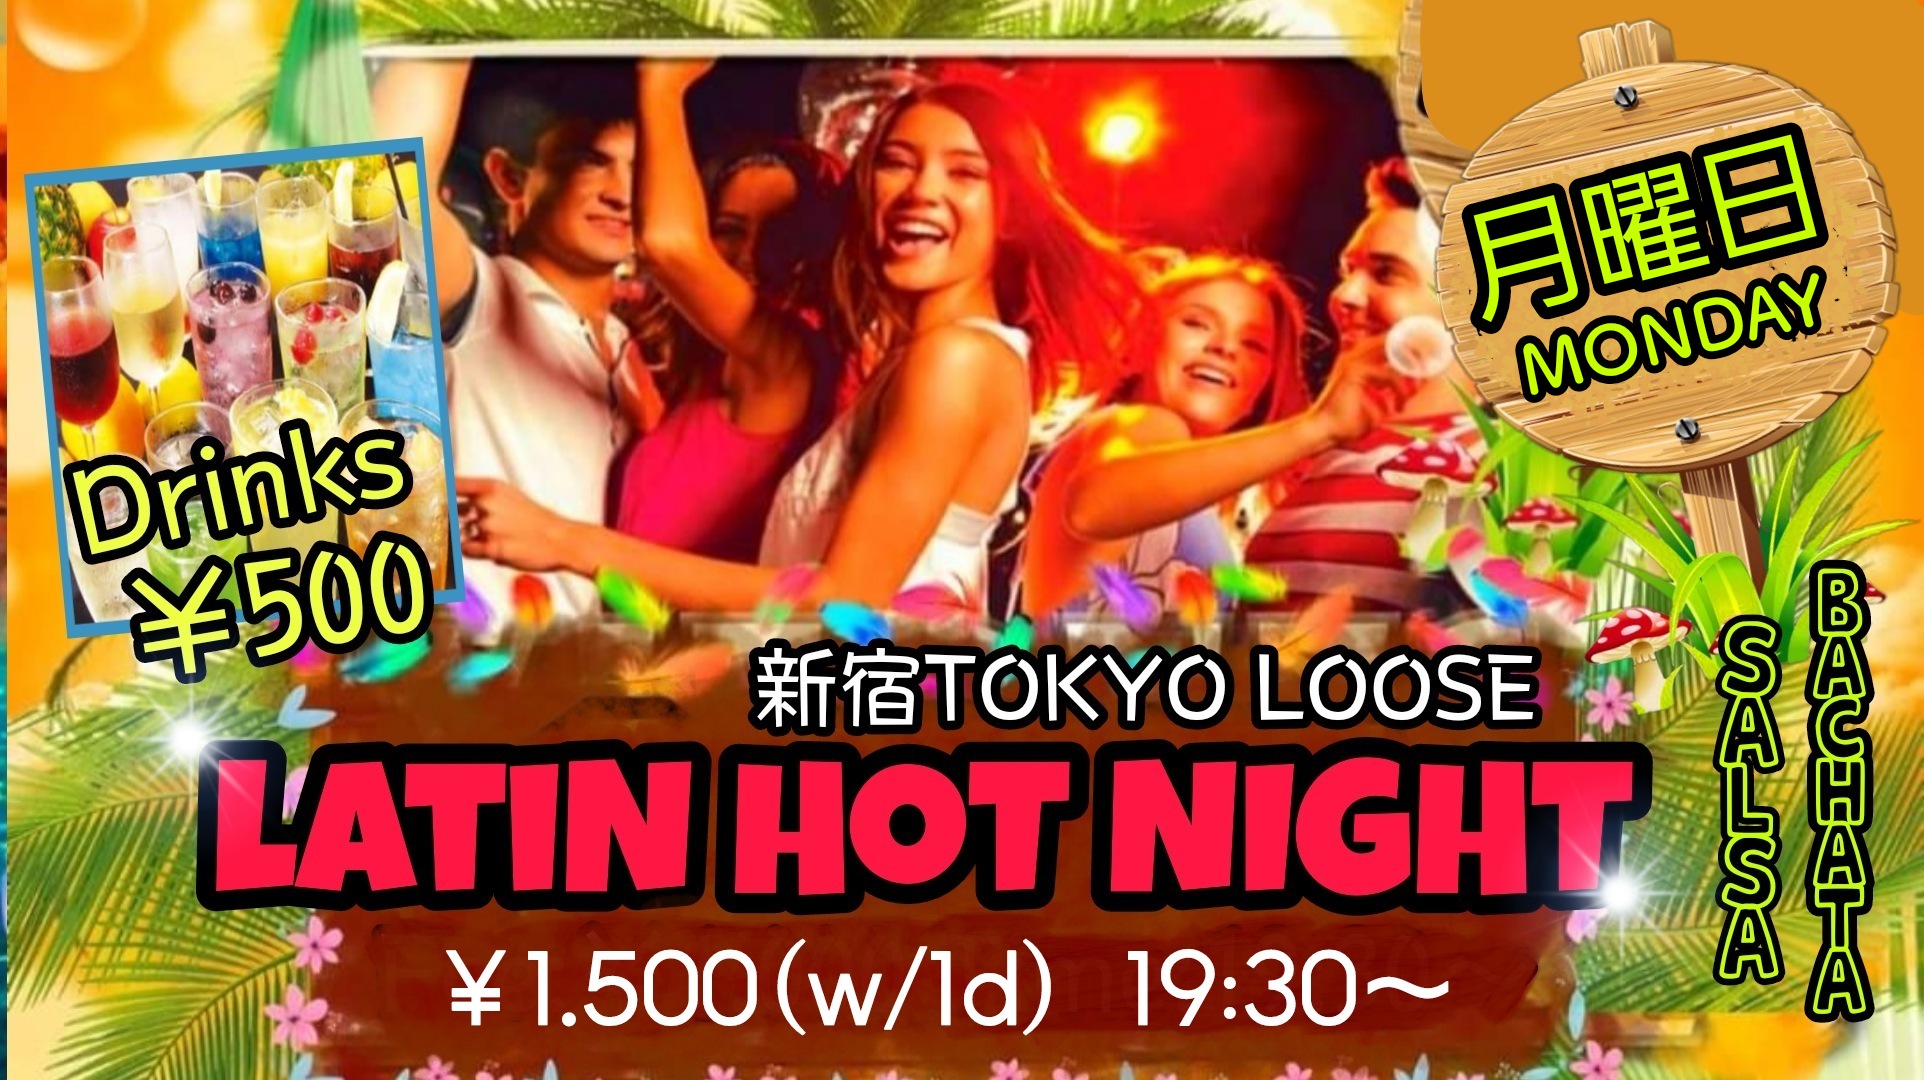 7/25(月)LATIN HOT NIGHT@新宿Tokyo Loose